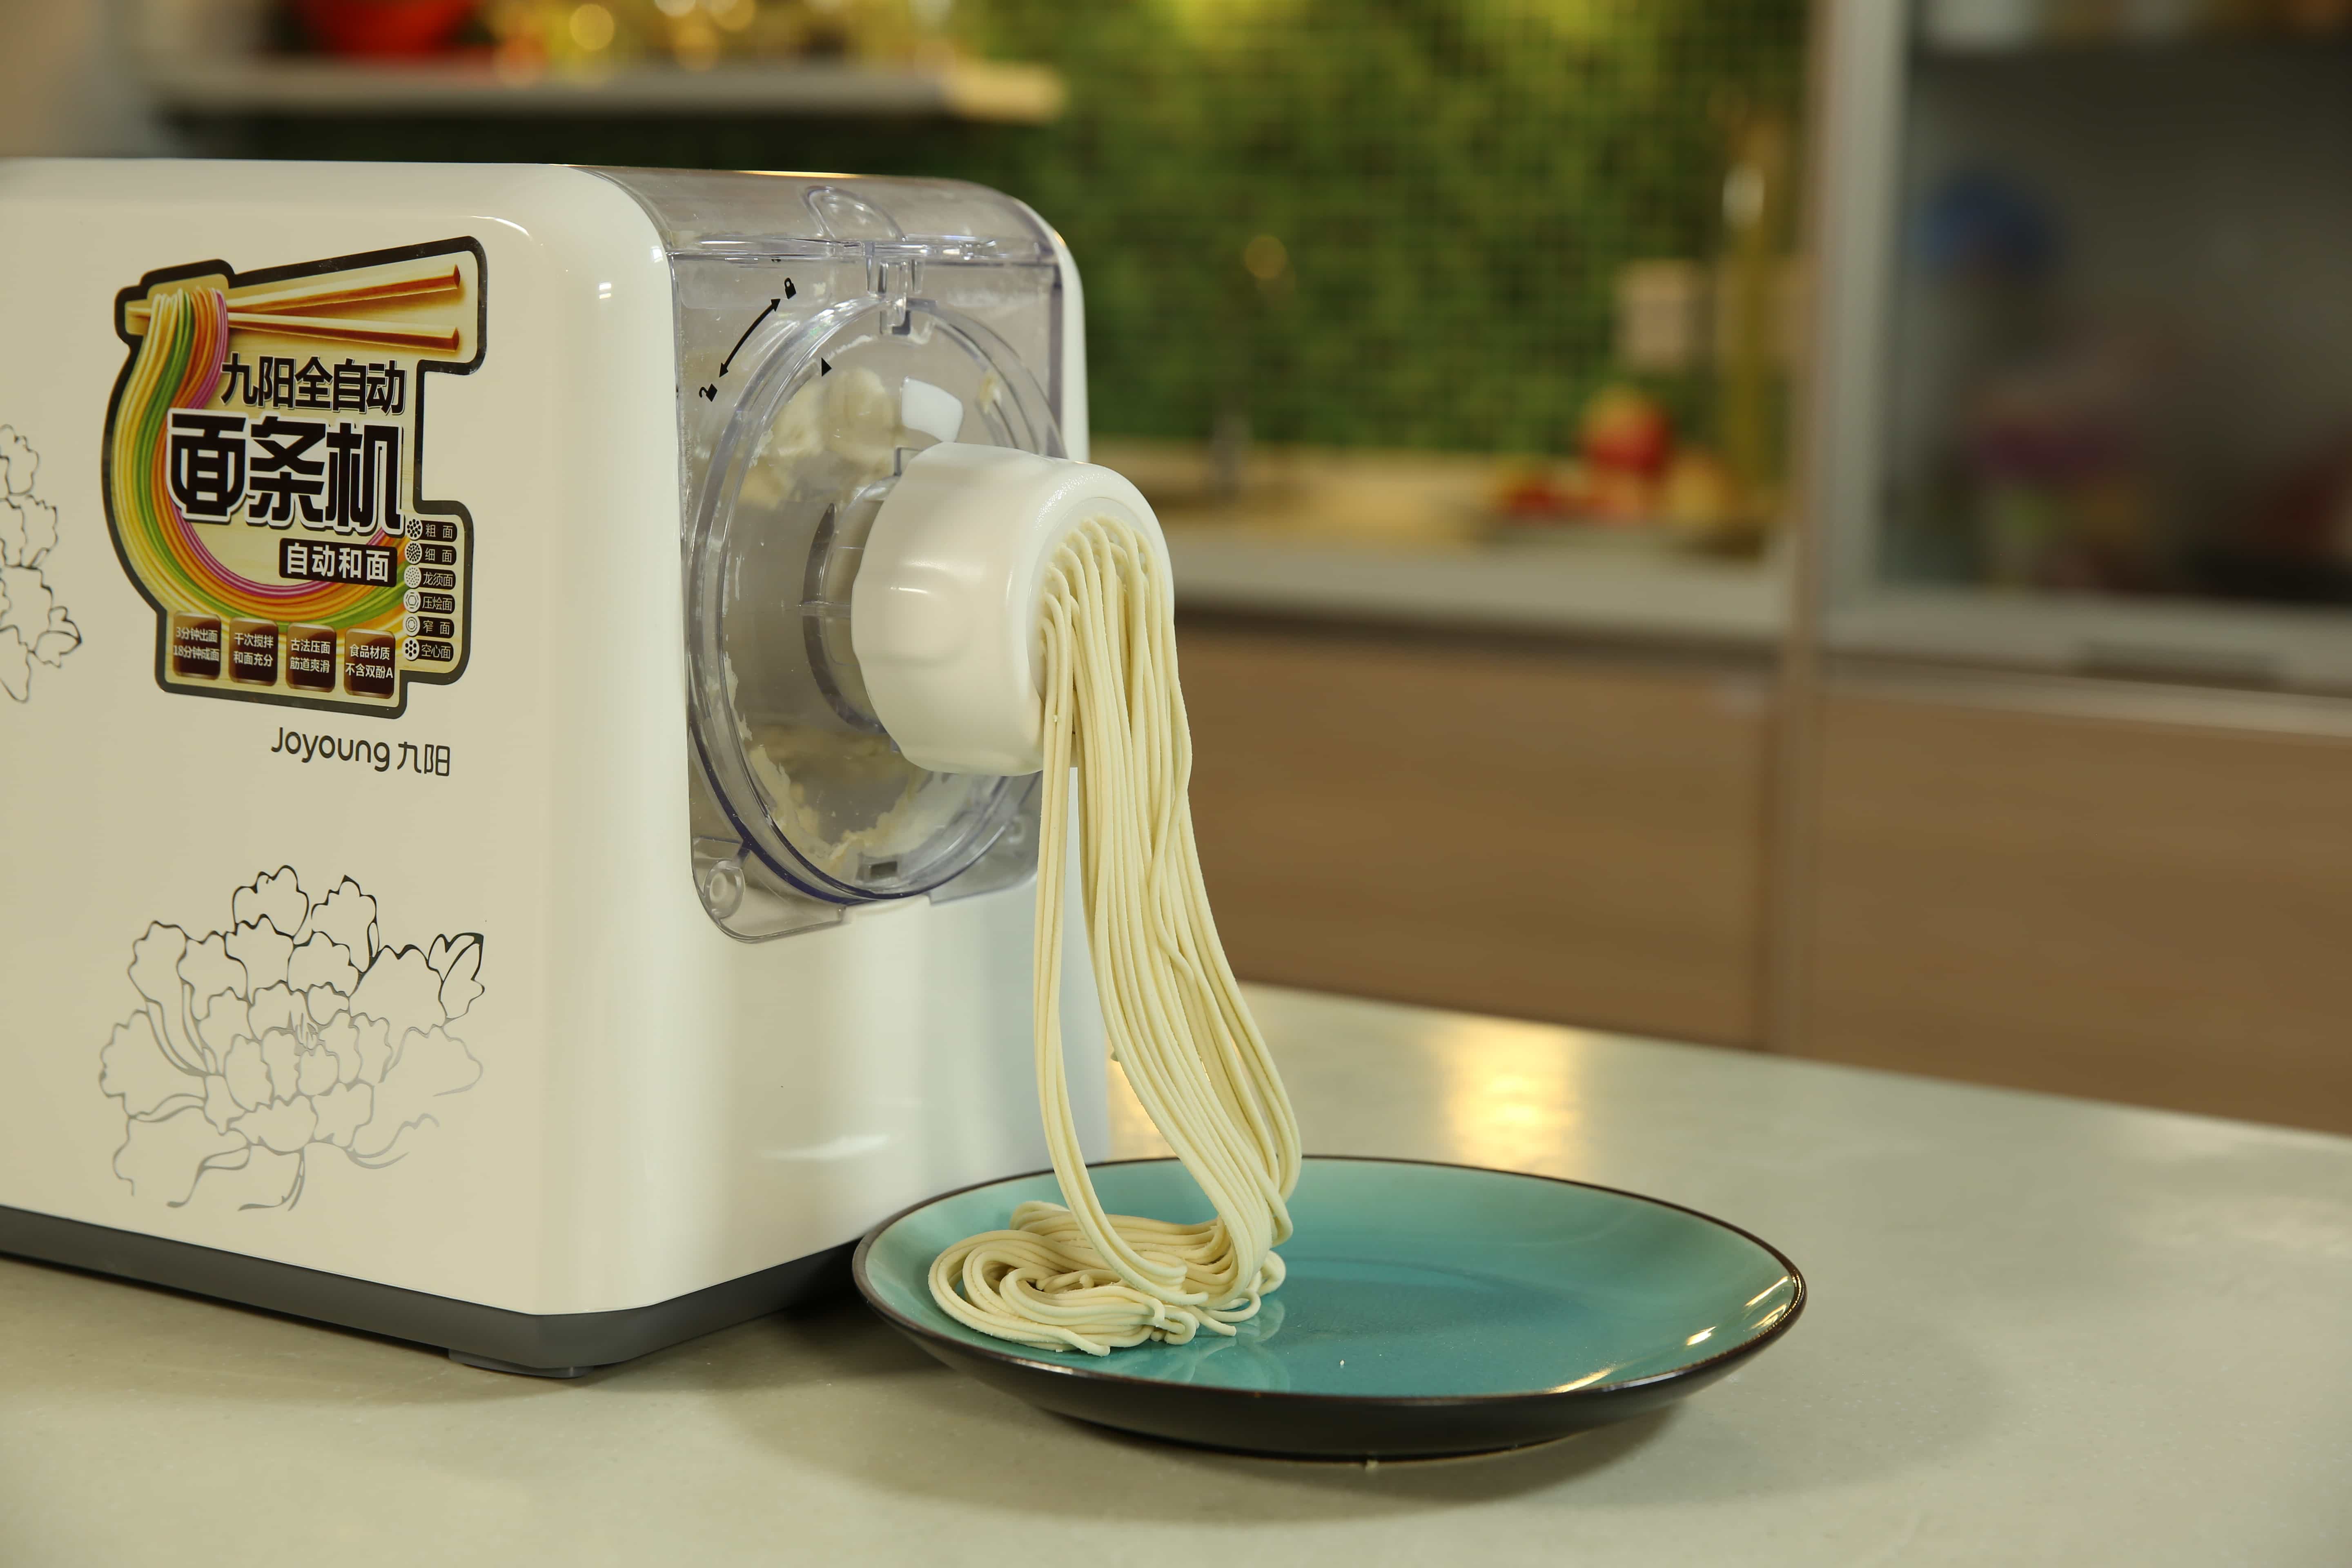 (JYS-N6CS) Joyoung Noodle maker with noodles image4